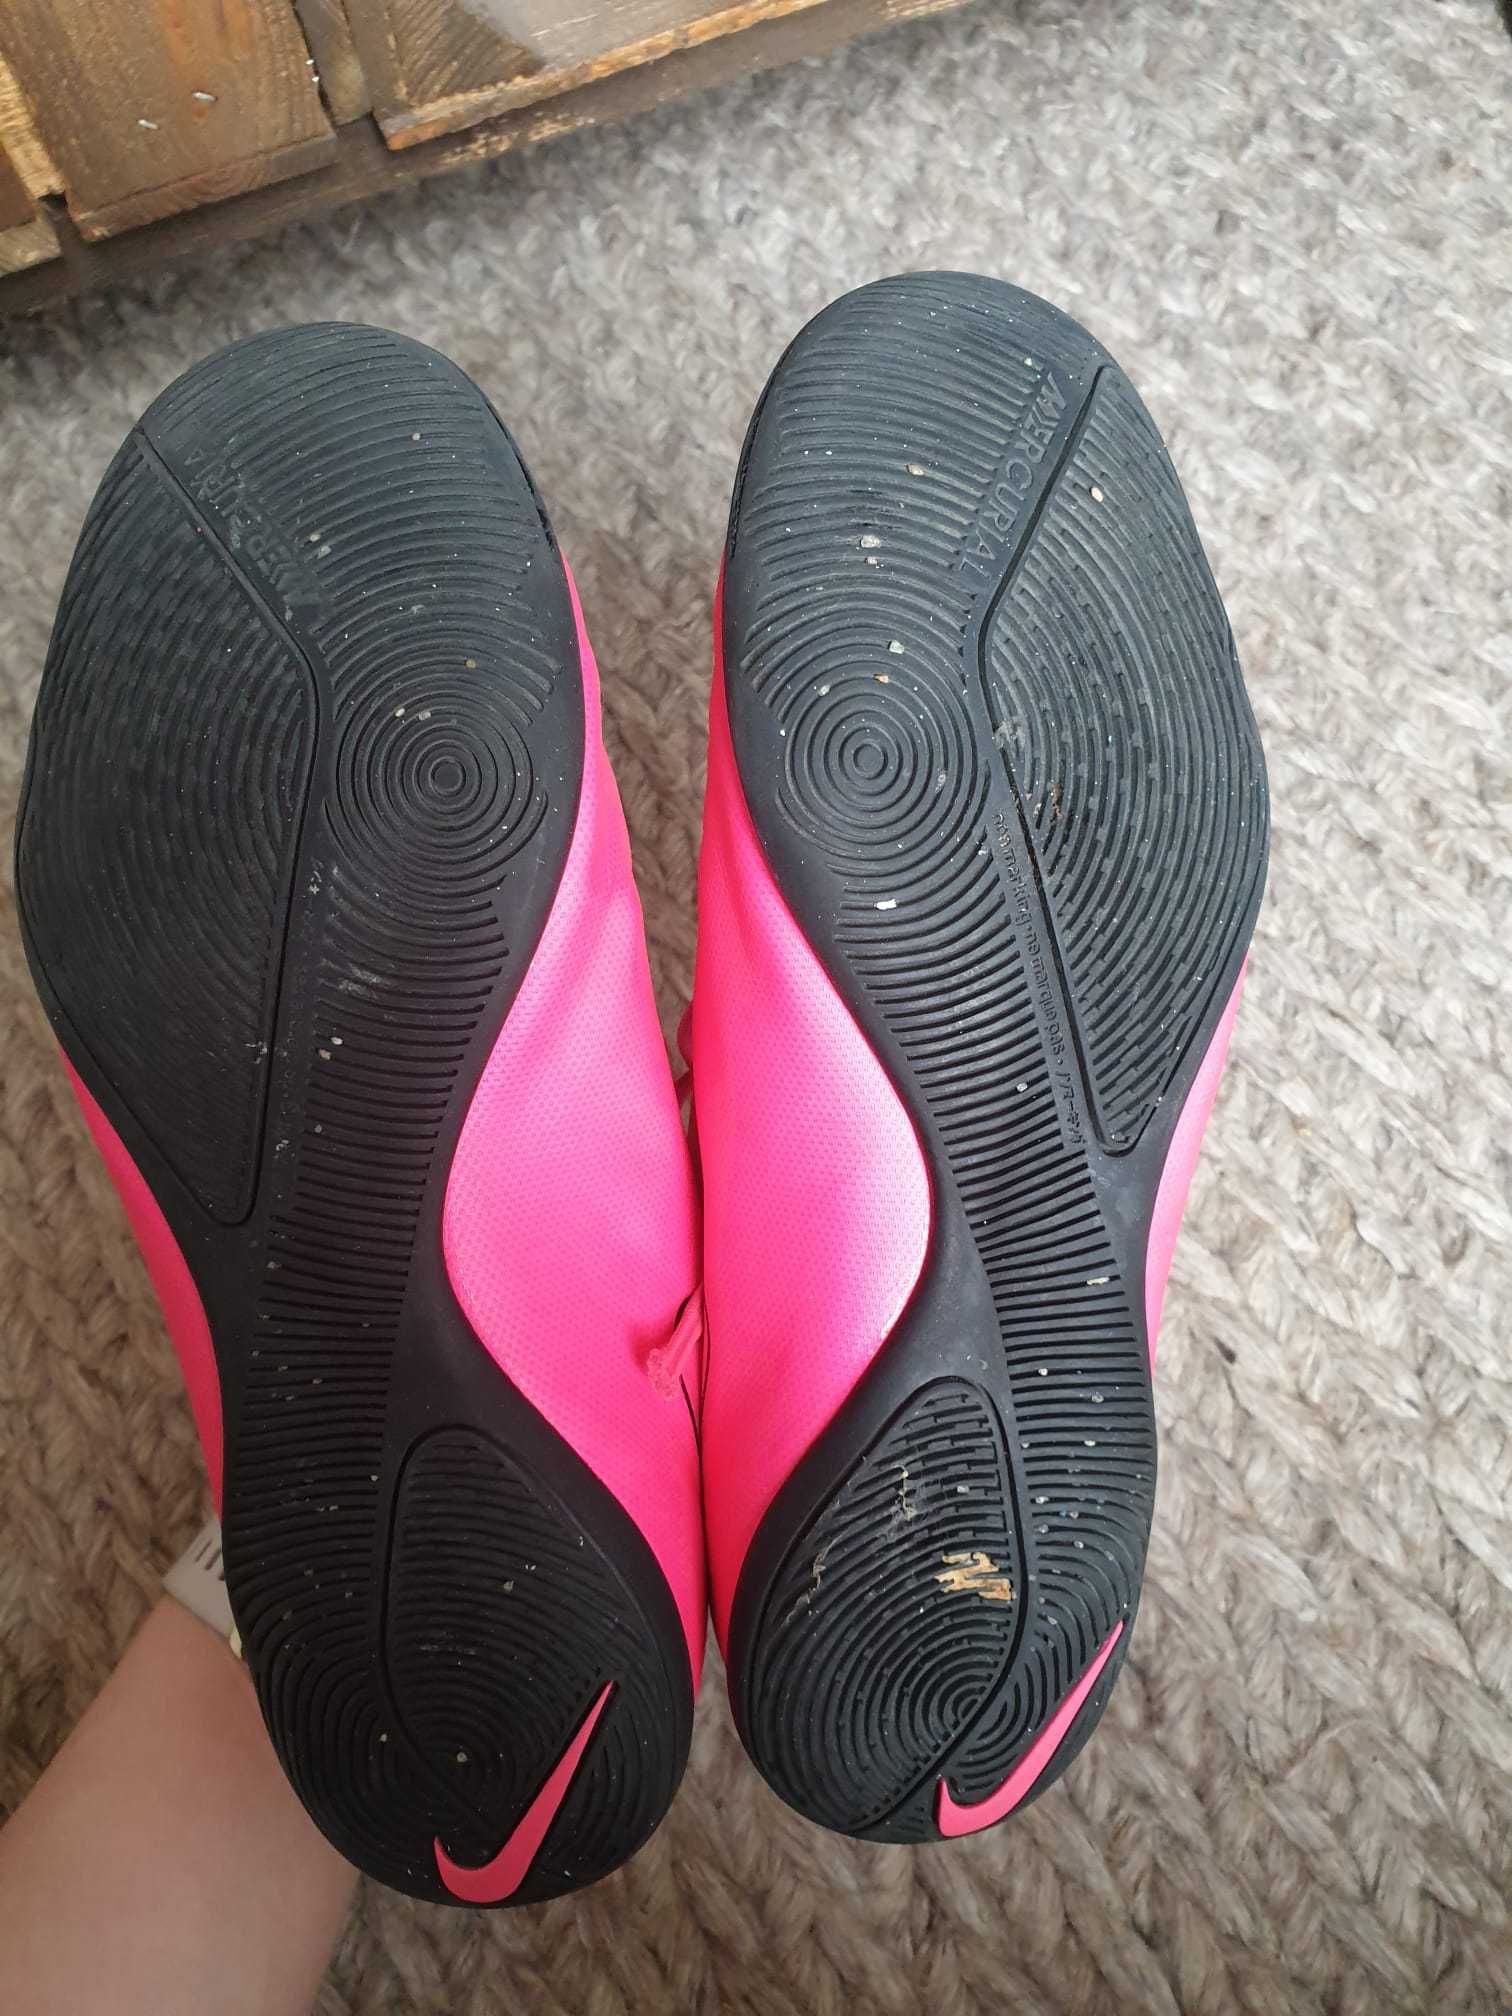 Buty Nike Mercurial halówki różowe męskie damskie r. 38.5